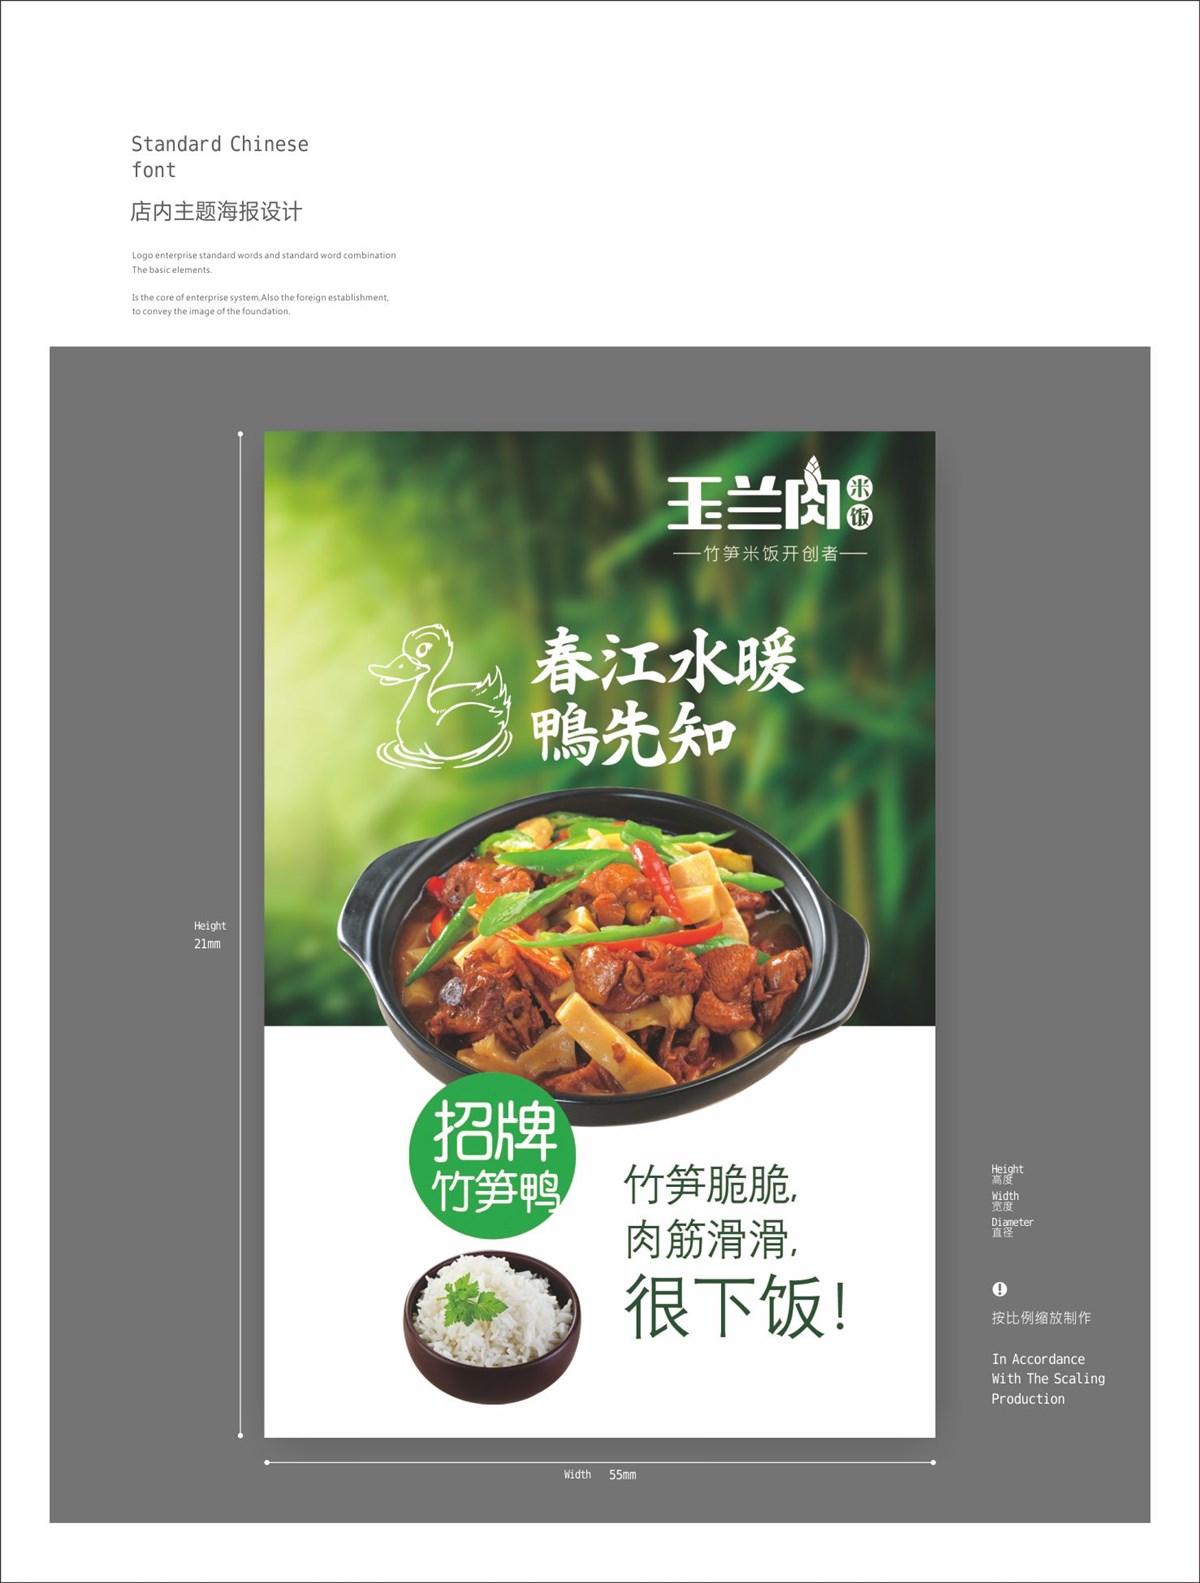 玉兰肉米饭VIS 餐饮品牌设计